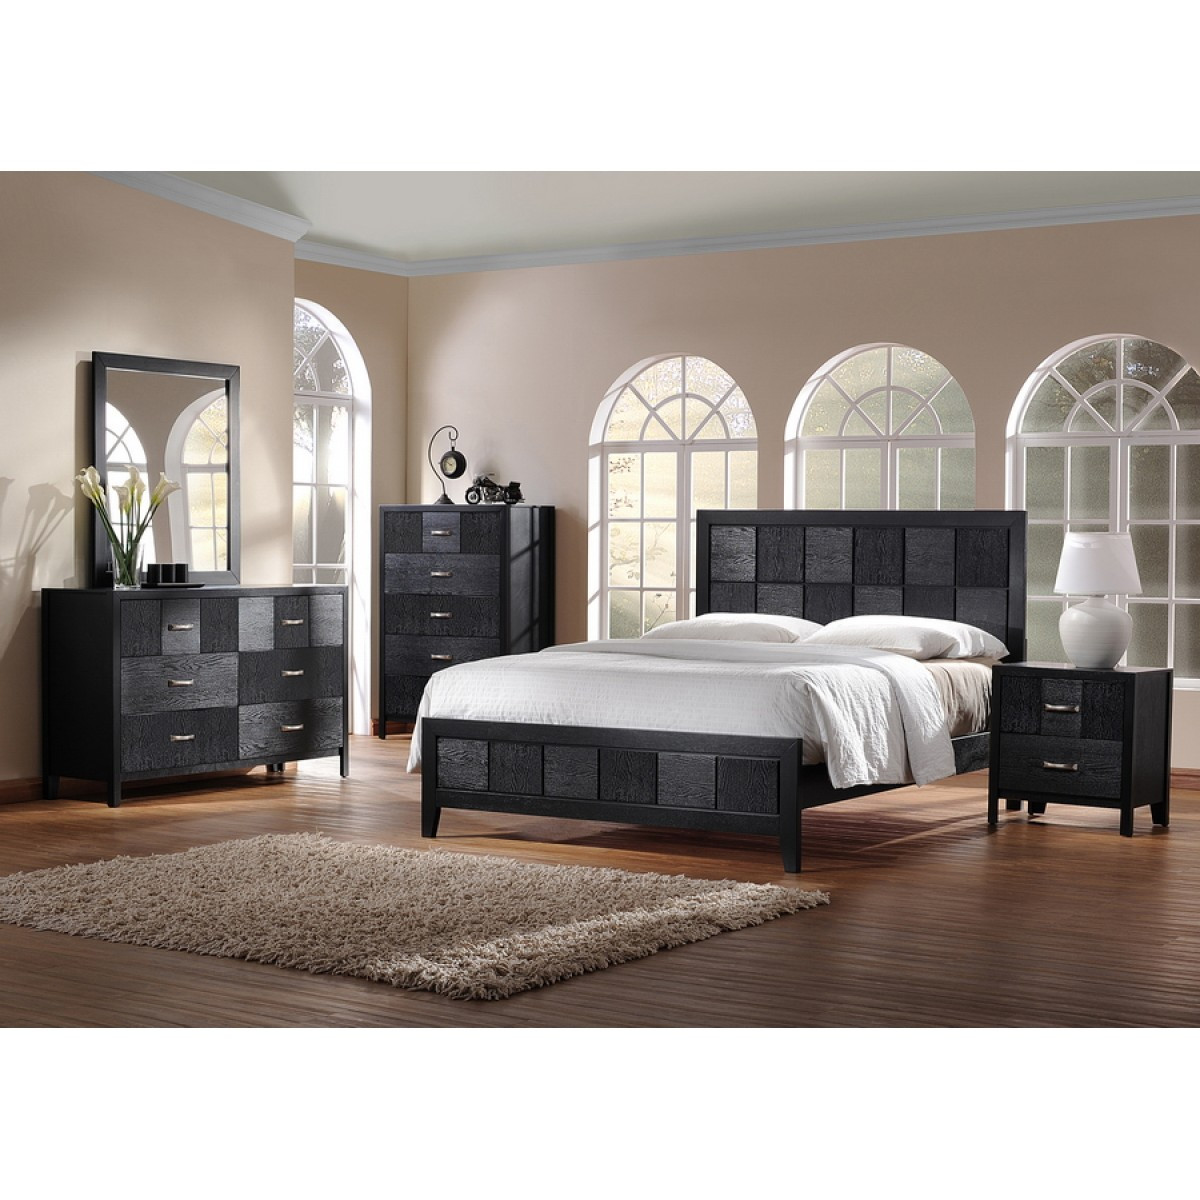 Modern King Size Bedroom Sets
 Montserrat Black Wood 5 Piece King Size Modern Bedroom Set